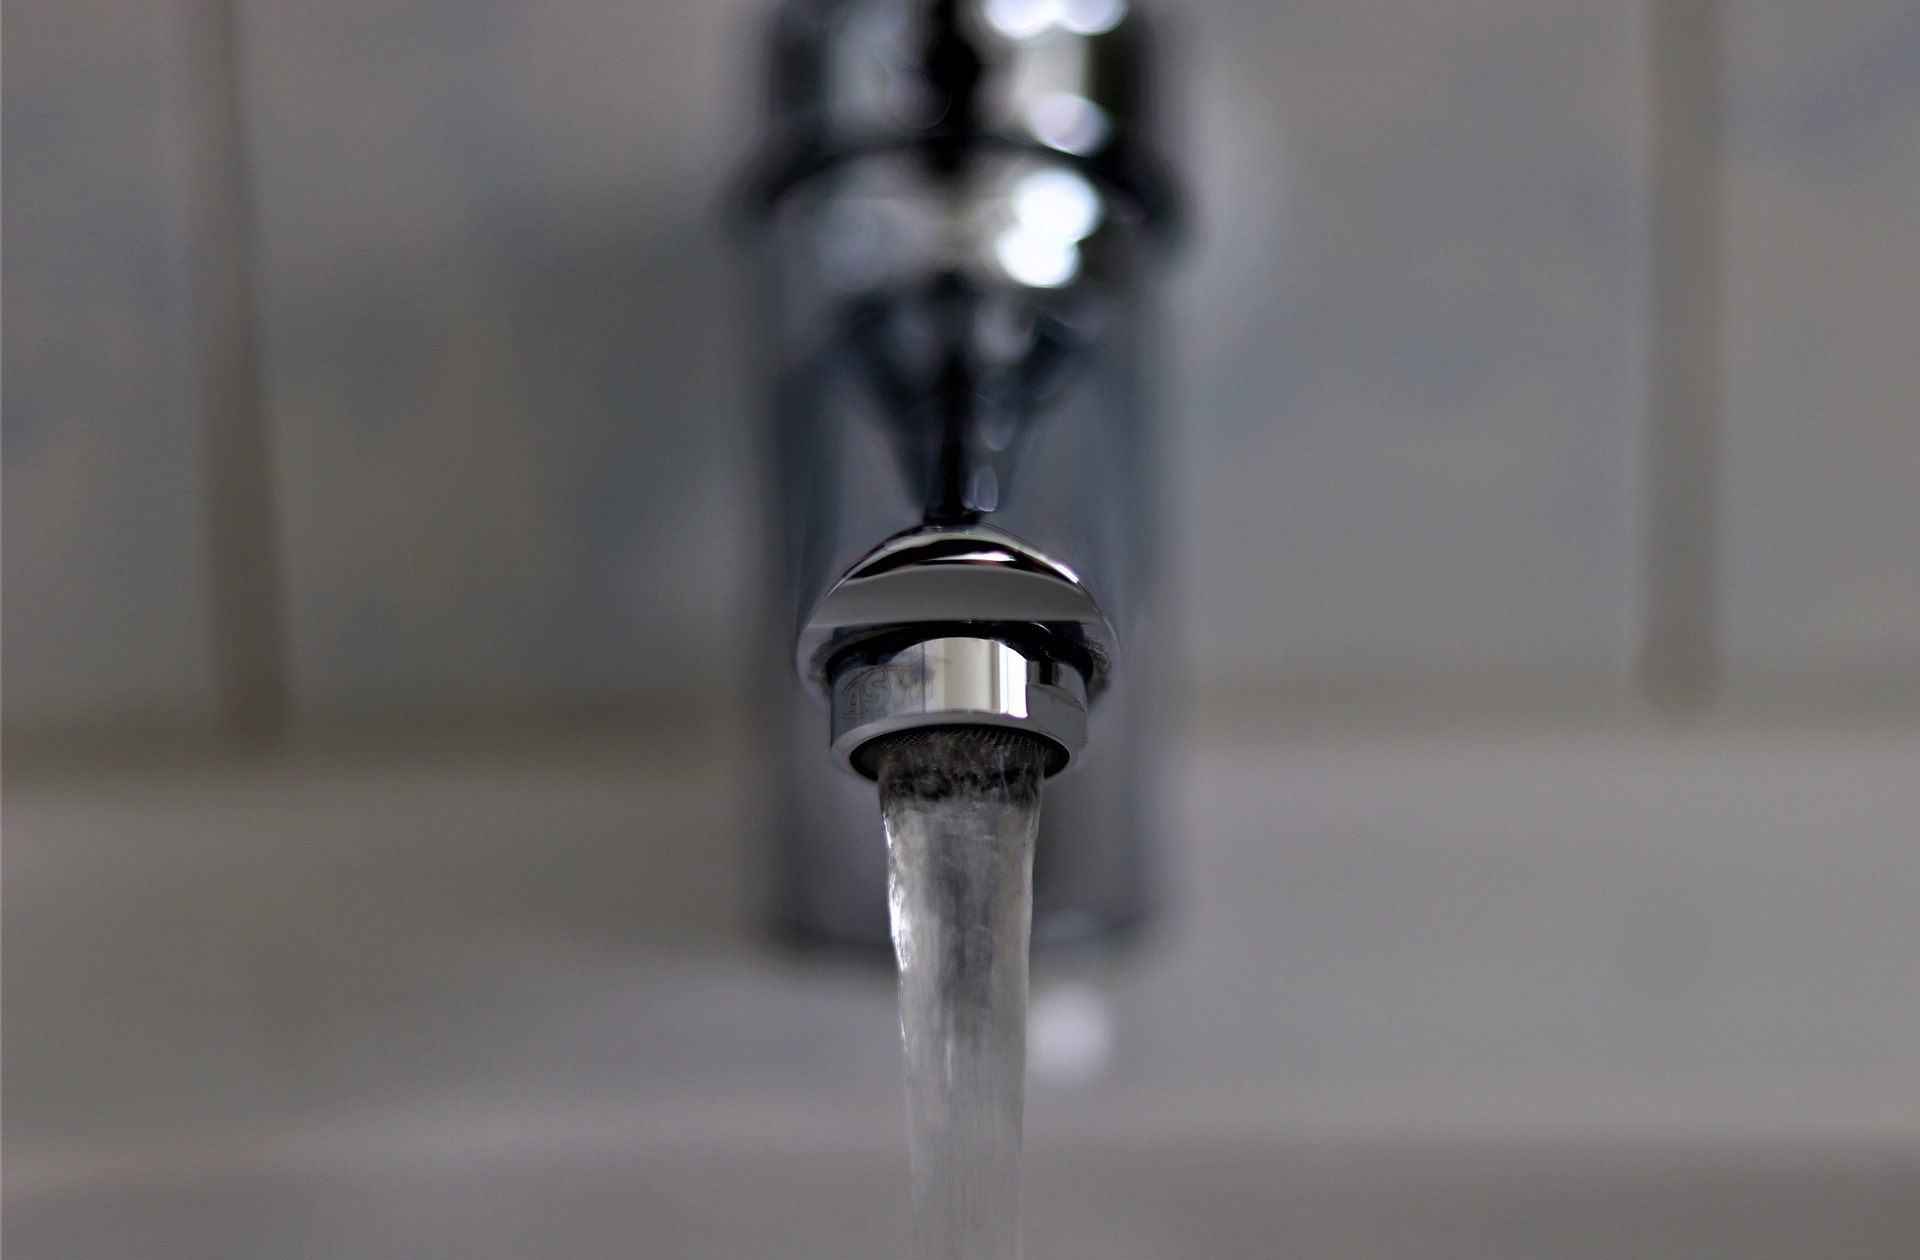 Woda z kranu może zawierać szkodliwe substancje niebezpieczne dla zdrowia